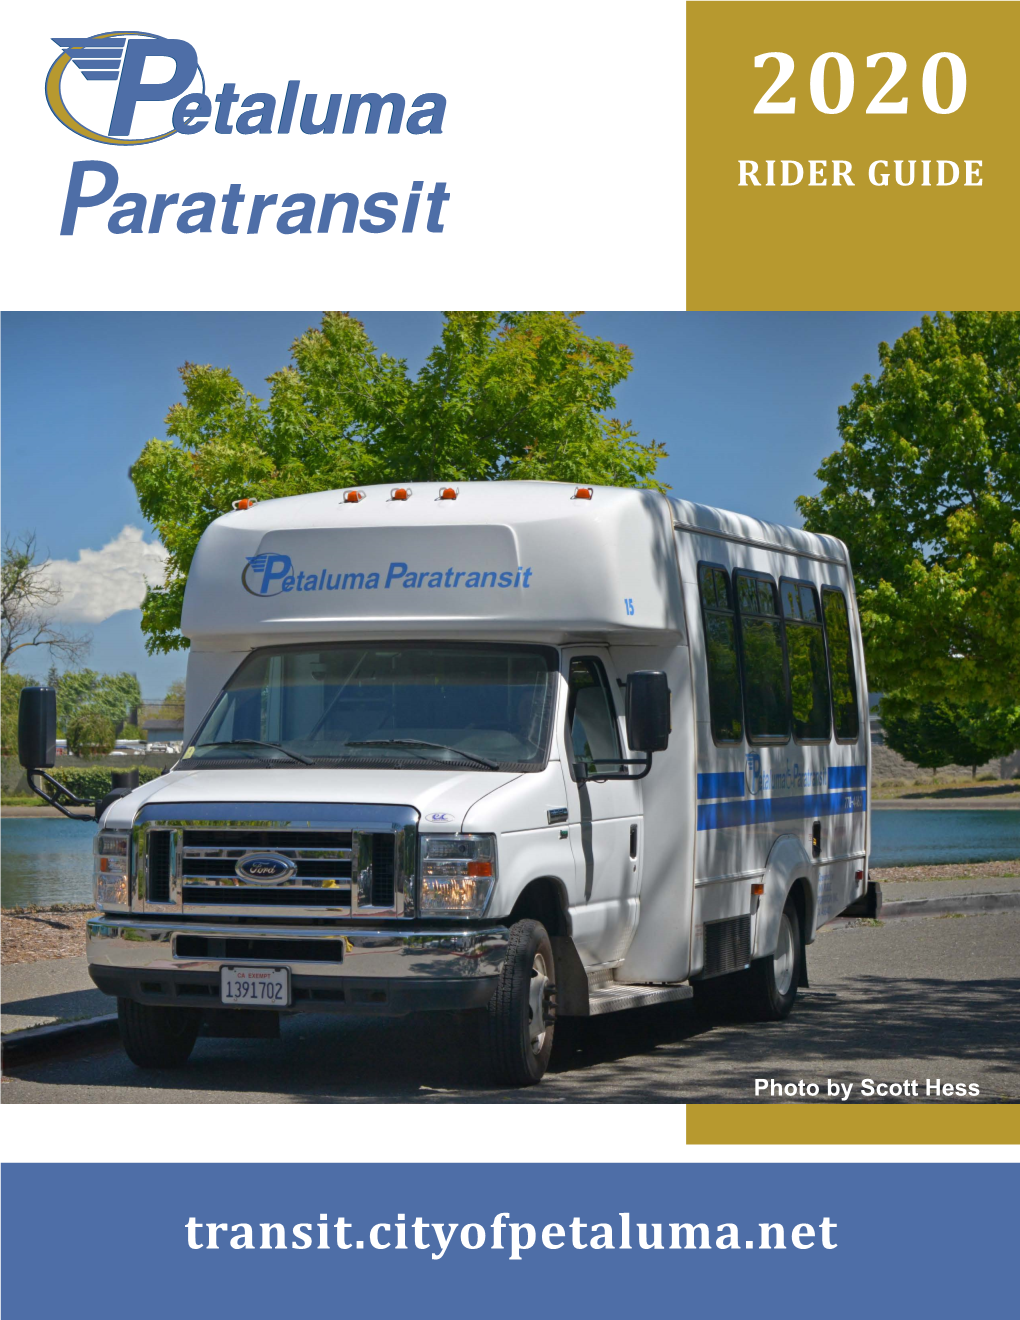 Petaluma Paratransit Rider Guide